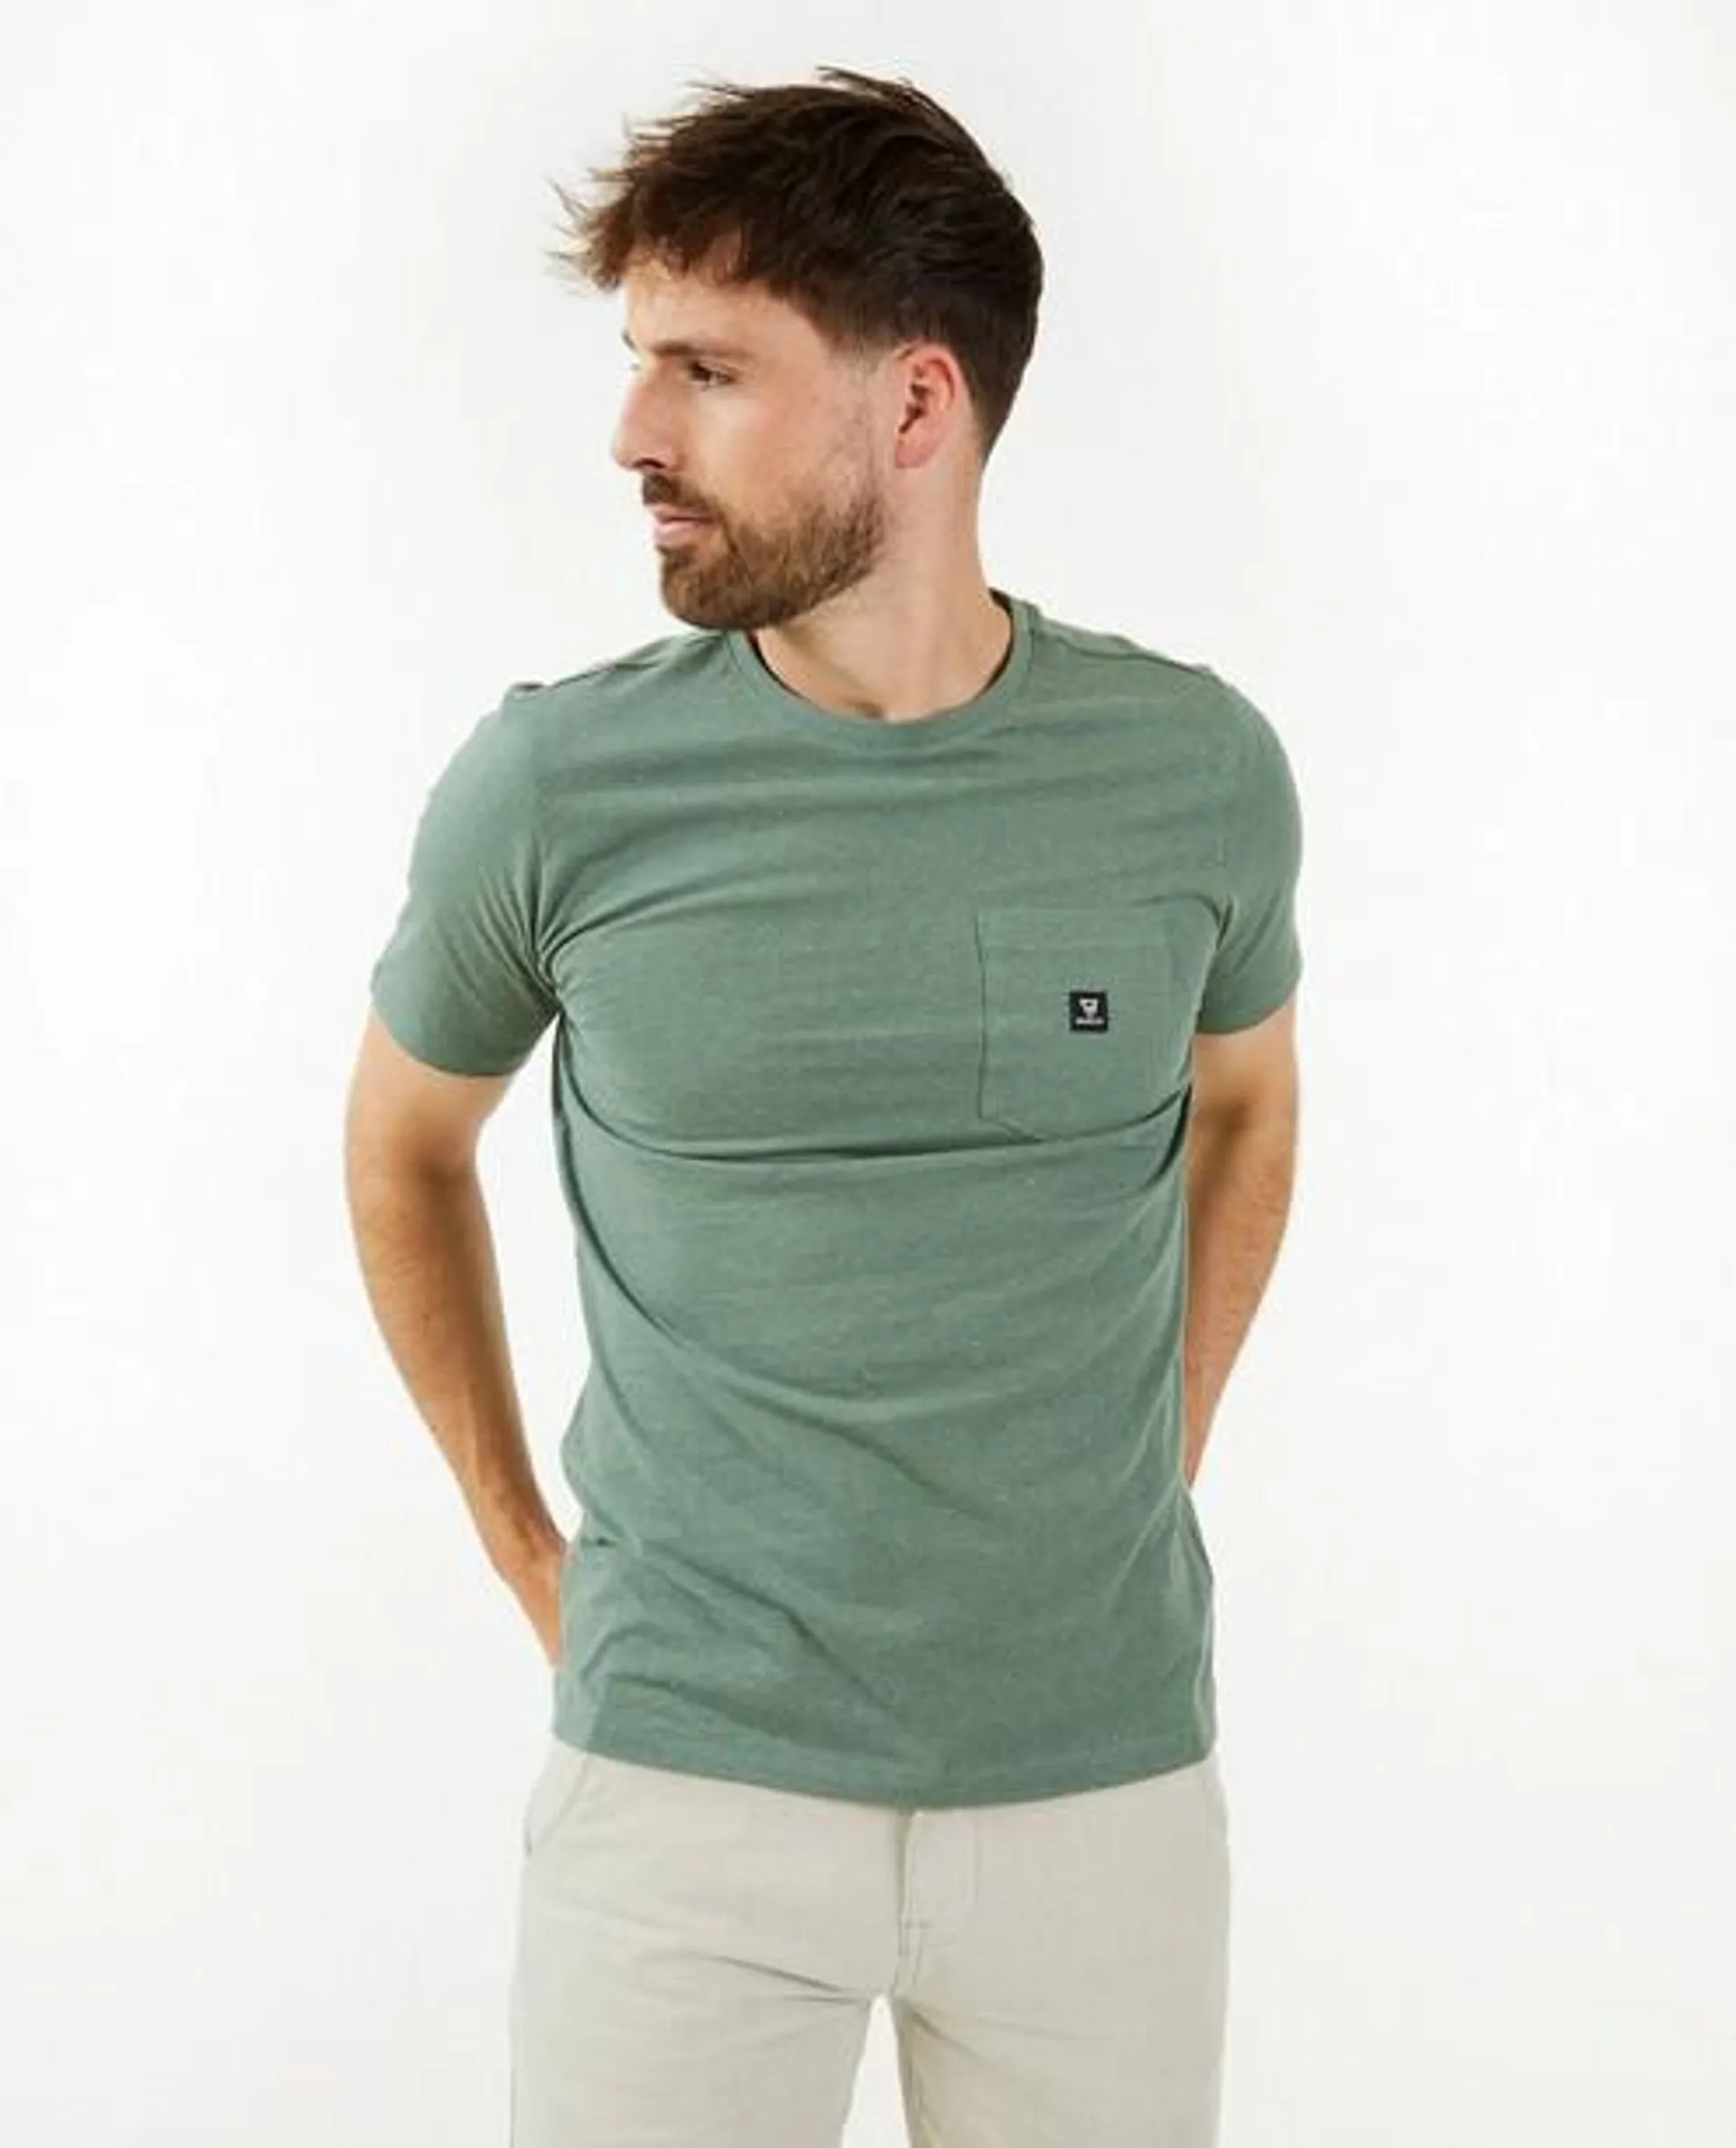 Groen T-shirt met spikkel